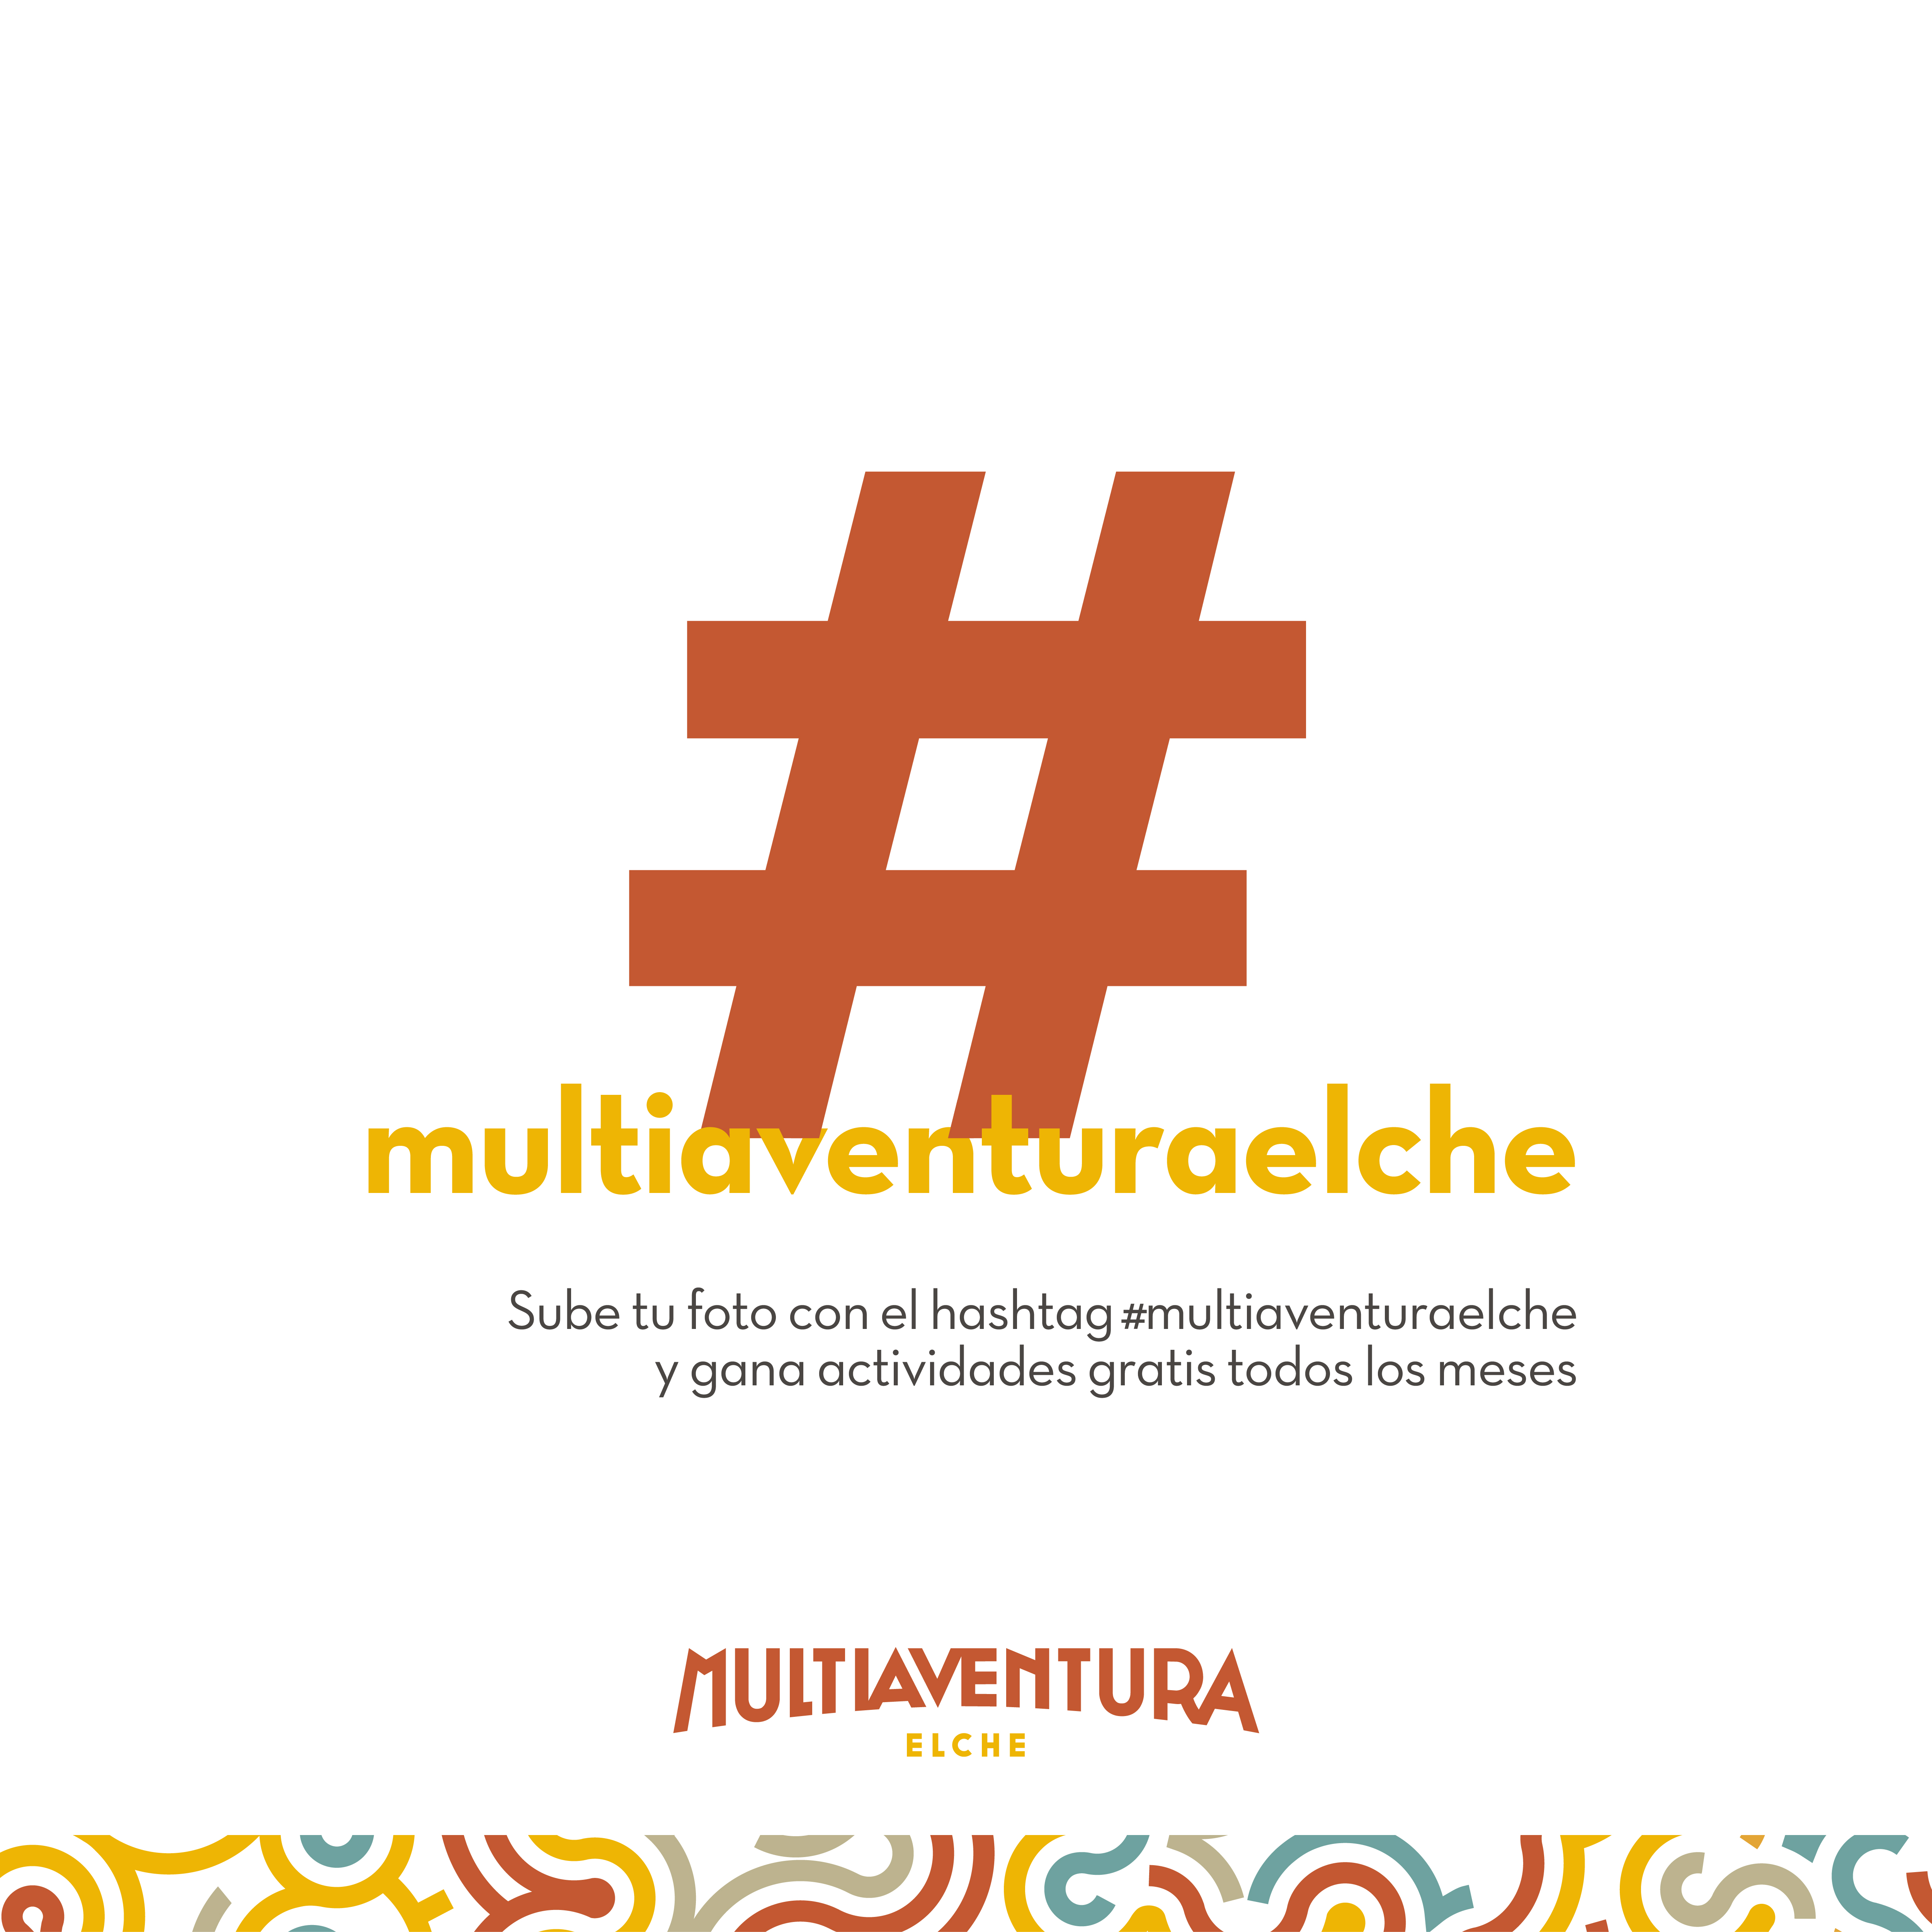 hashtag multiaventuraelche